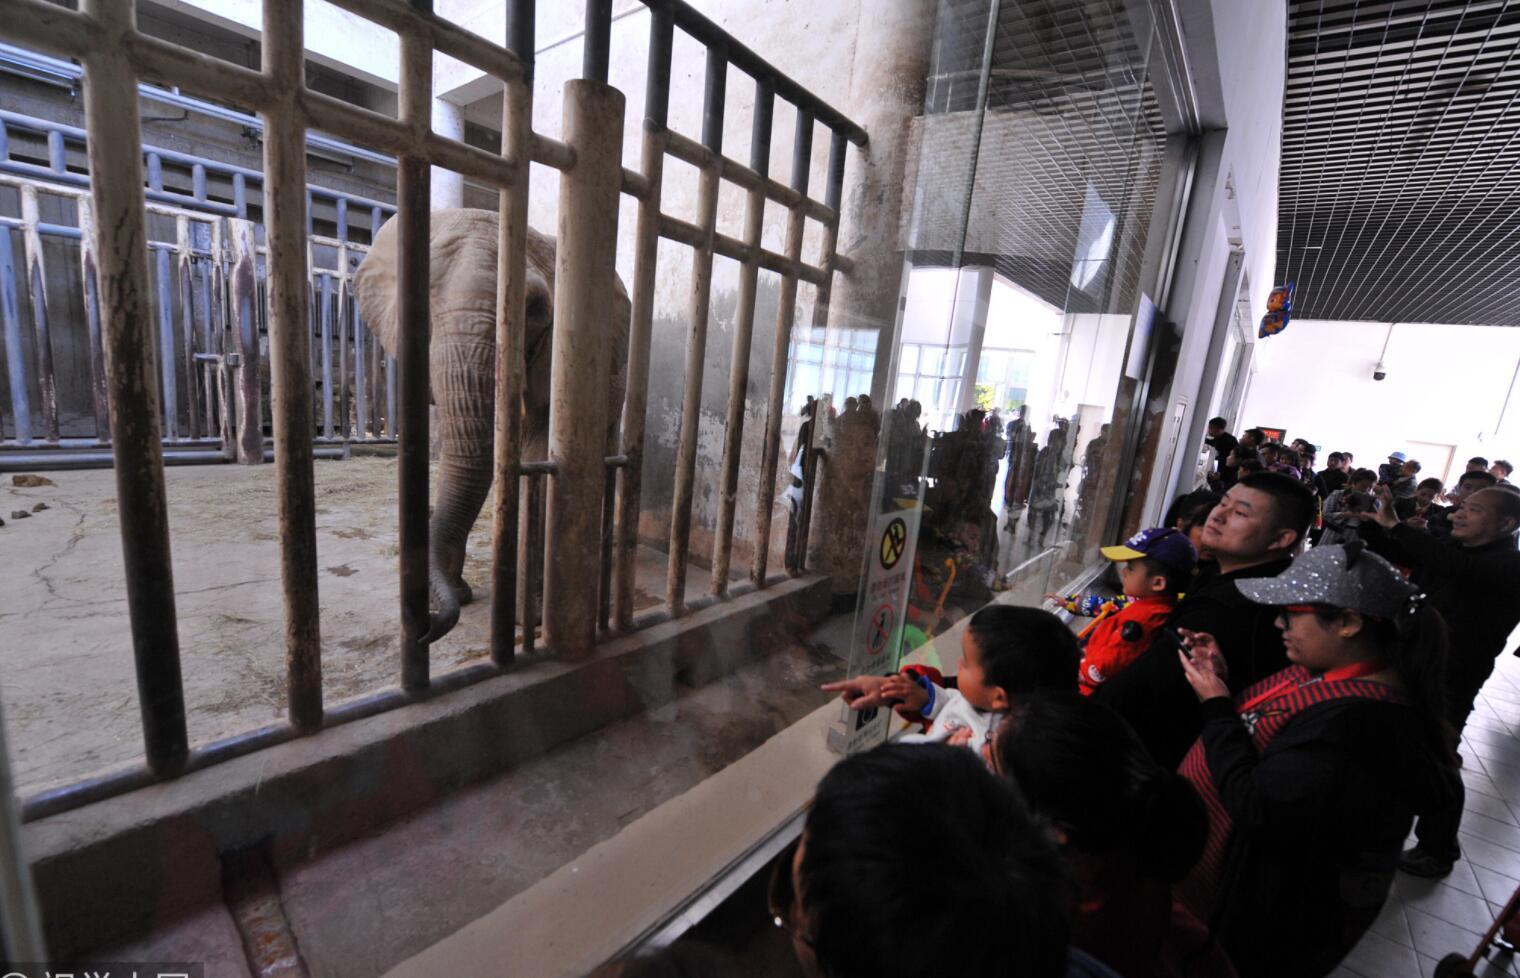 此外，记者发现，针对此前网传“北京动物园丢失一大象”的虚假消息，北京市动物园官方微博也在昨天下午发布消息正式辟谣，称大象馆所有大象均正常展出，请大家不信谣、不传谣。随后，北京警方还给出提示：冒用警方名义编造散布虚假信息是违法行为，警方正针对此事开展调查。